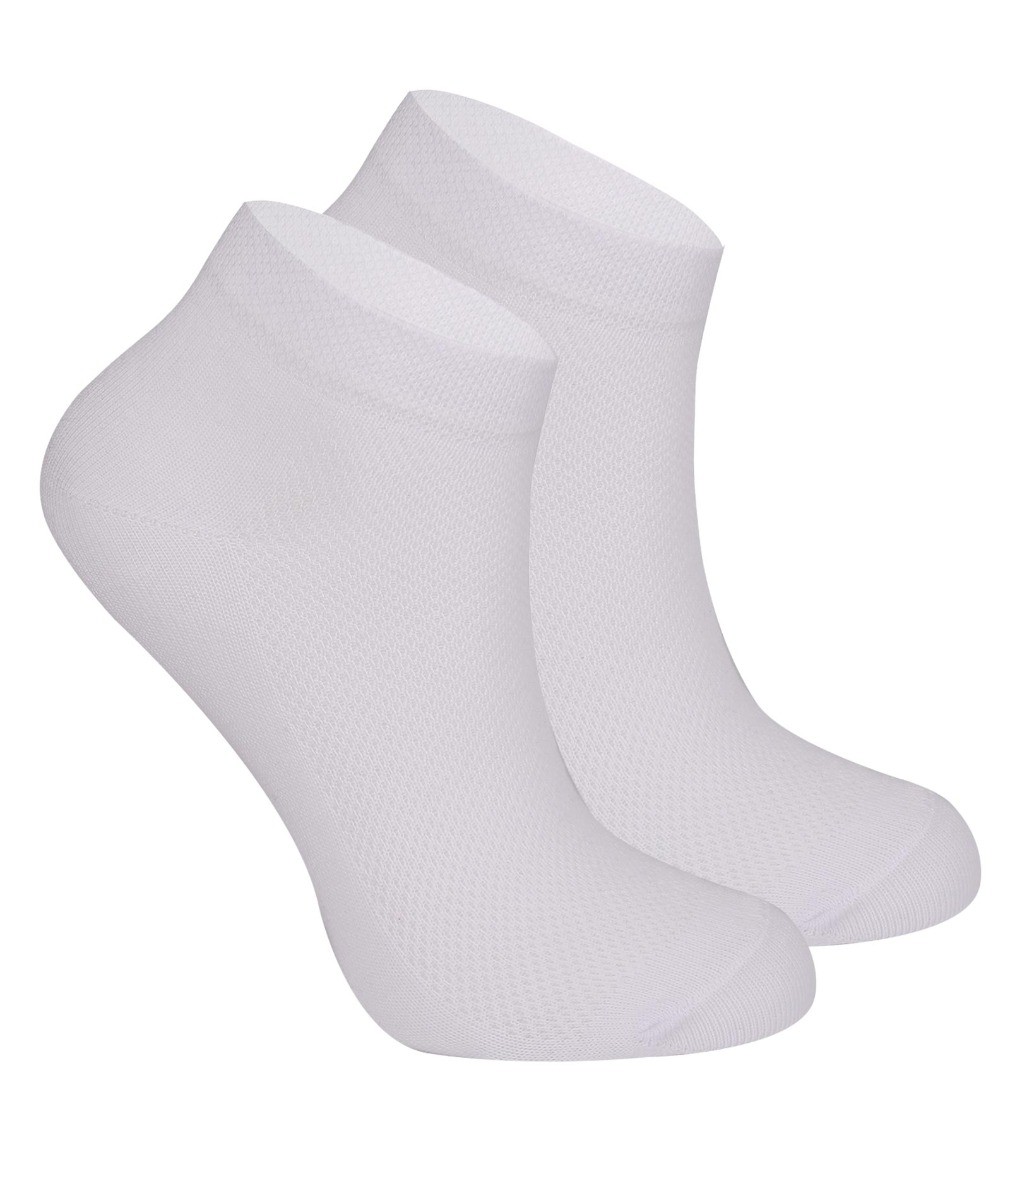 Kinder Unisex Socken aus Baumwolle - Weiß